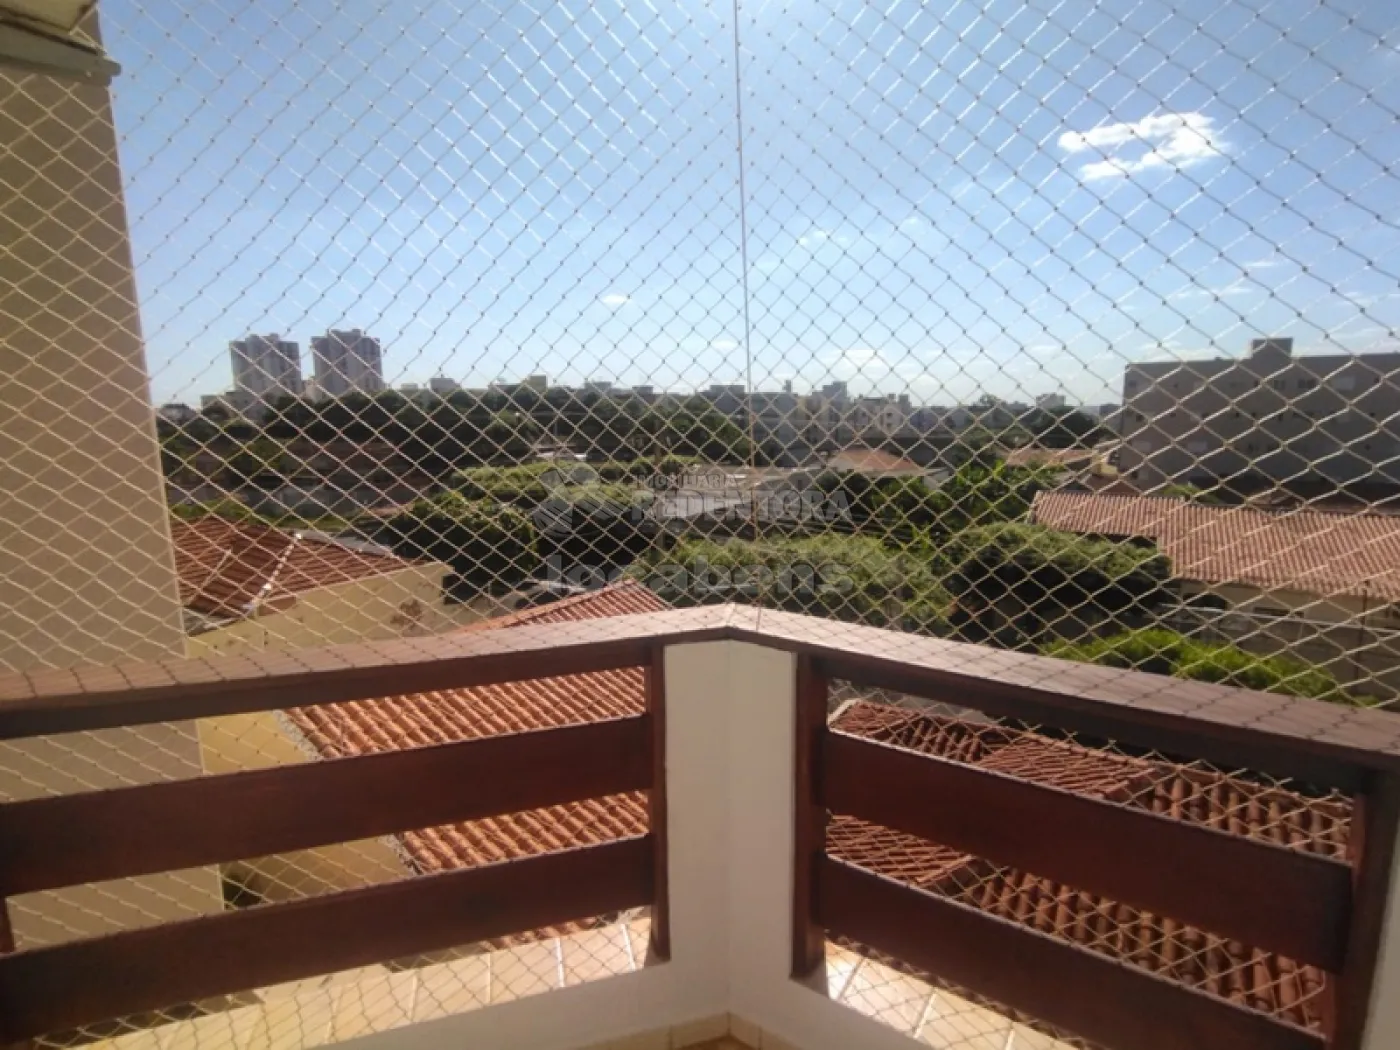 Comprar Apartamento / Padrão em São José do Rio Preto apenas R$ 480.000,00 - Foto 15